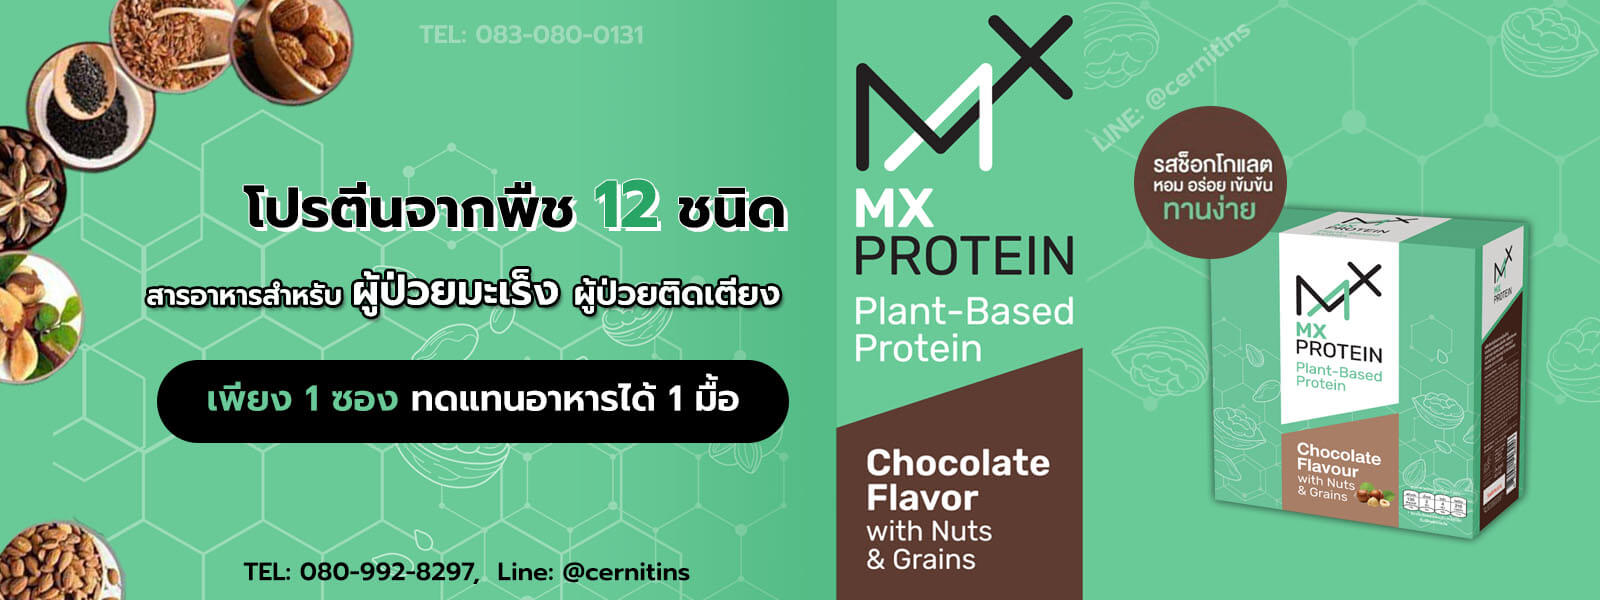 MX Protein เอ็มเอ็กซ์โปรตีน โปรตีนผู้ป่วยมะเร็ง โปรตีนจากพืช